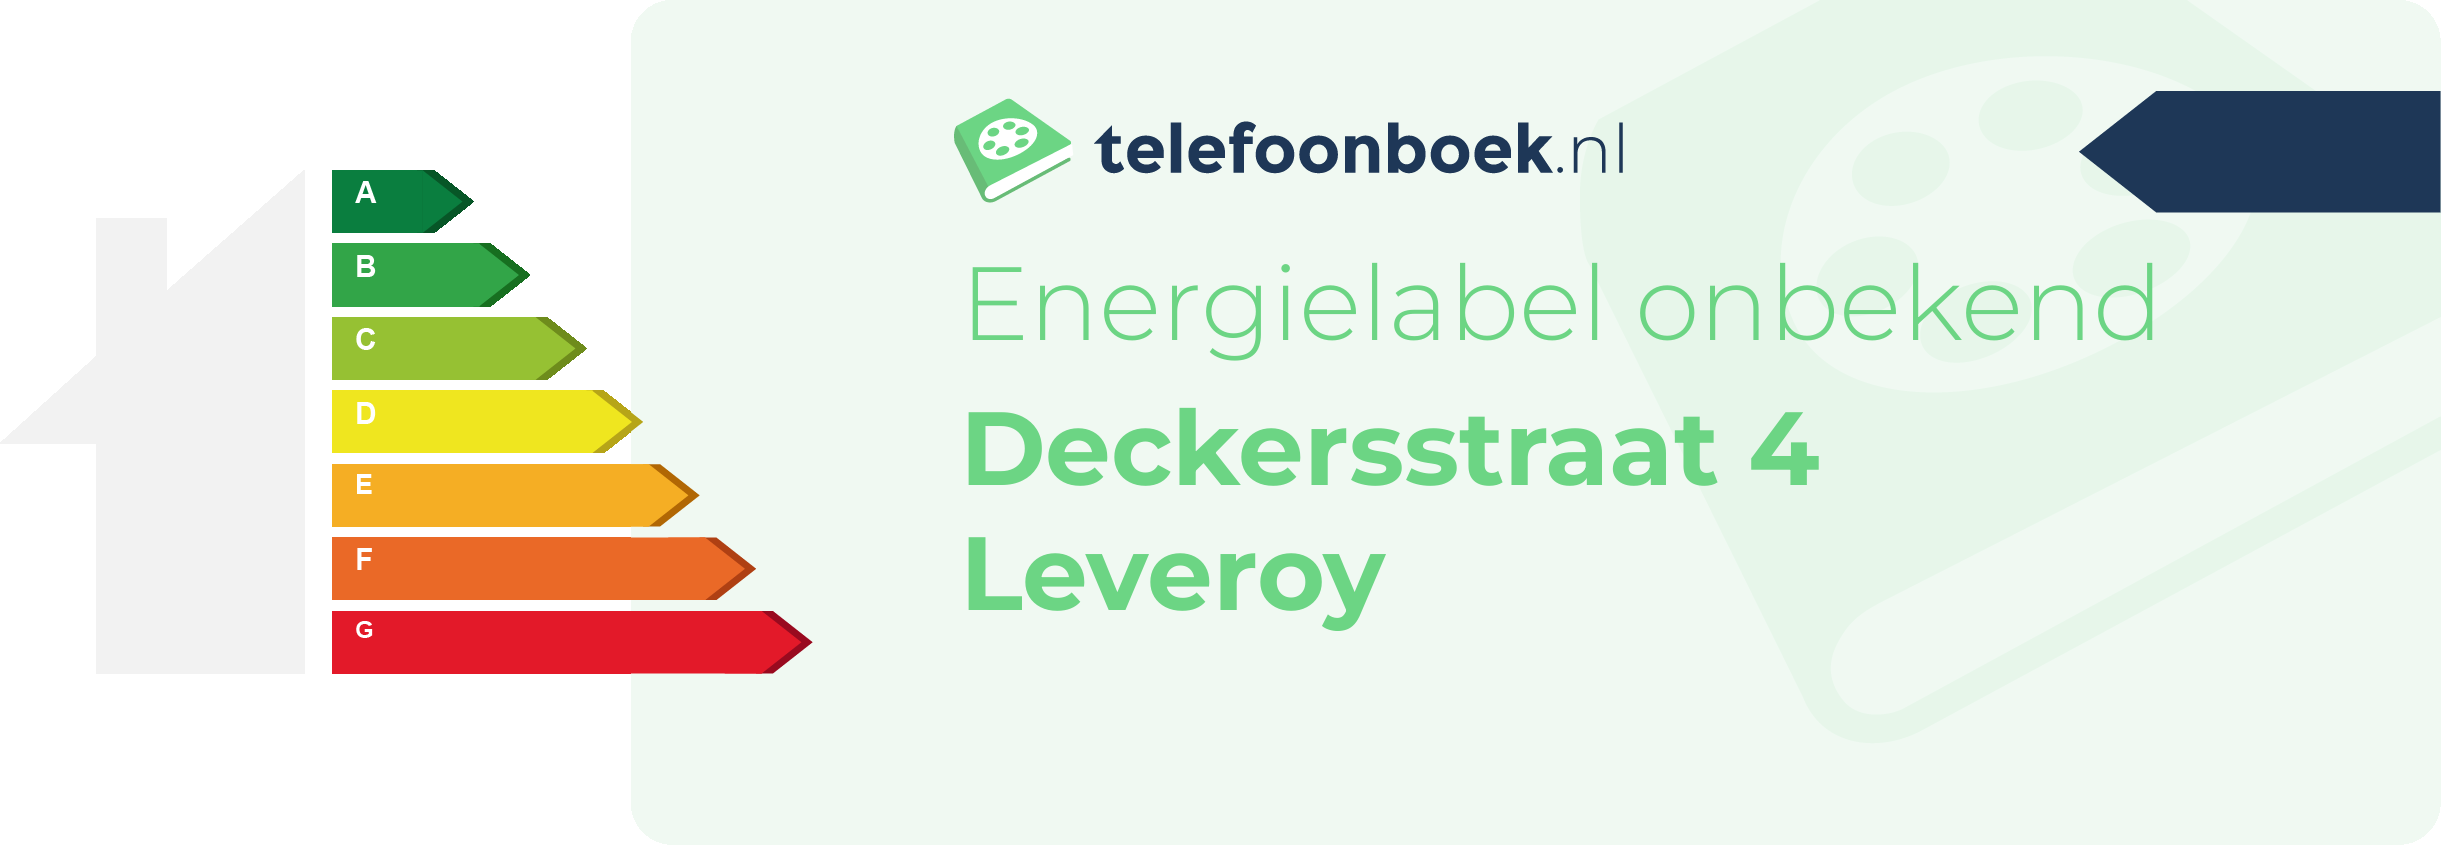 Energielabel Deckersstraat 4 Leveroy